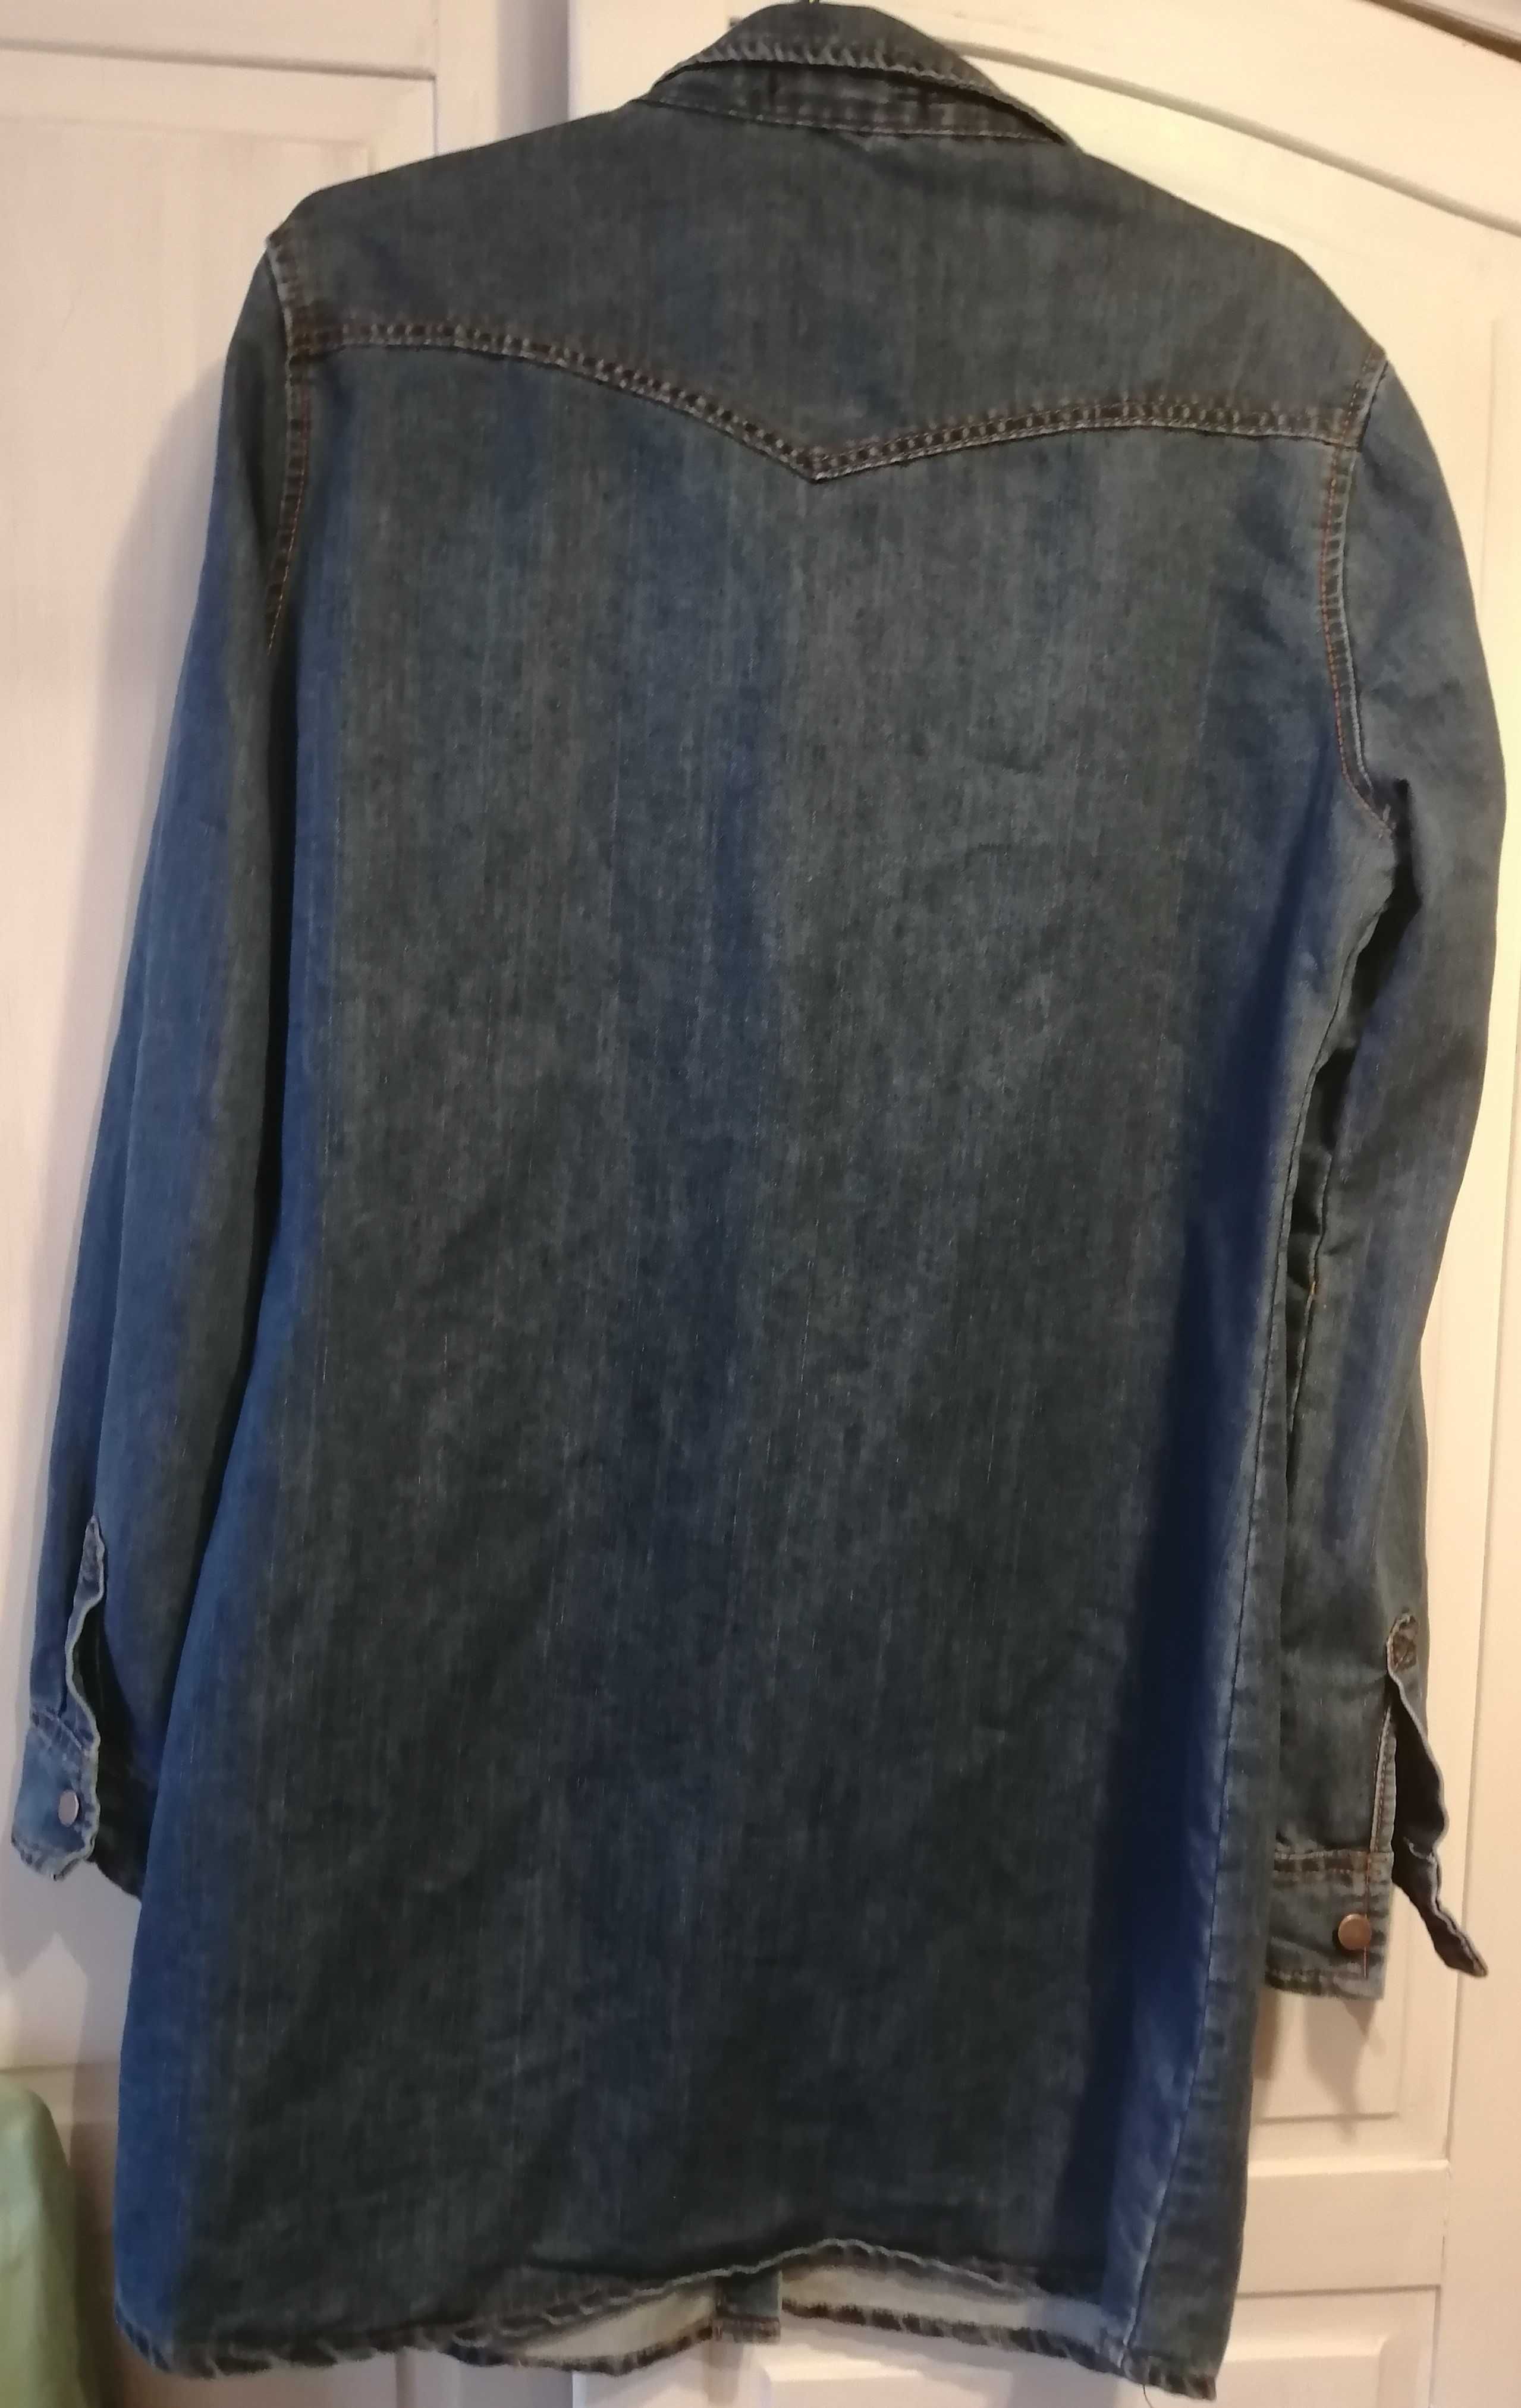 damska bluza/długa koszula dżinsowa rozmiar 46